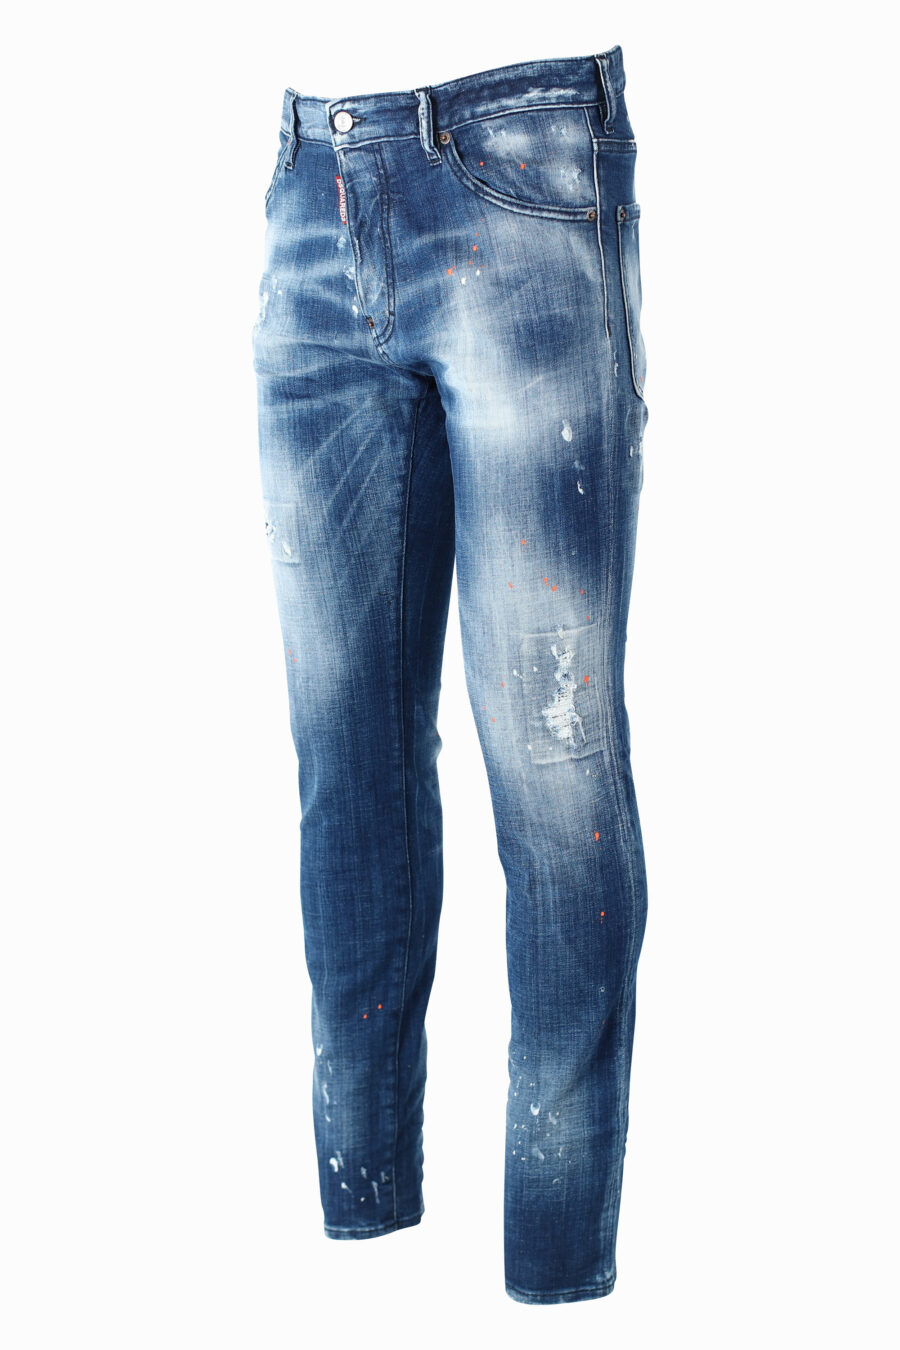 Pantalón vaquero "Cool Guy" azul semidesgastado con semirotos - IMG 0970